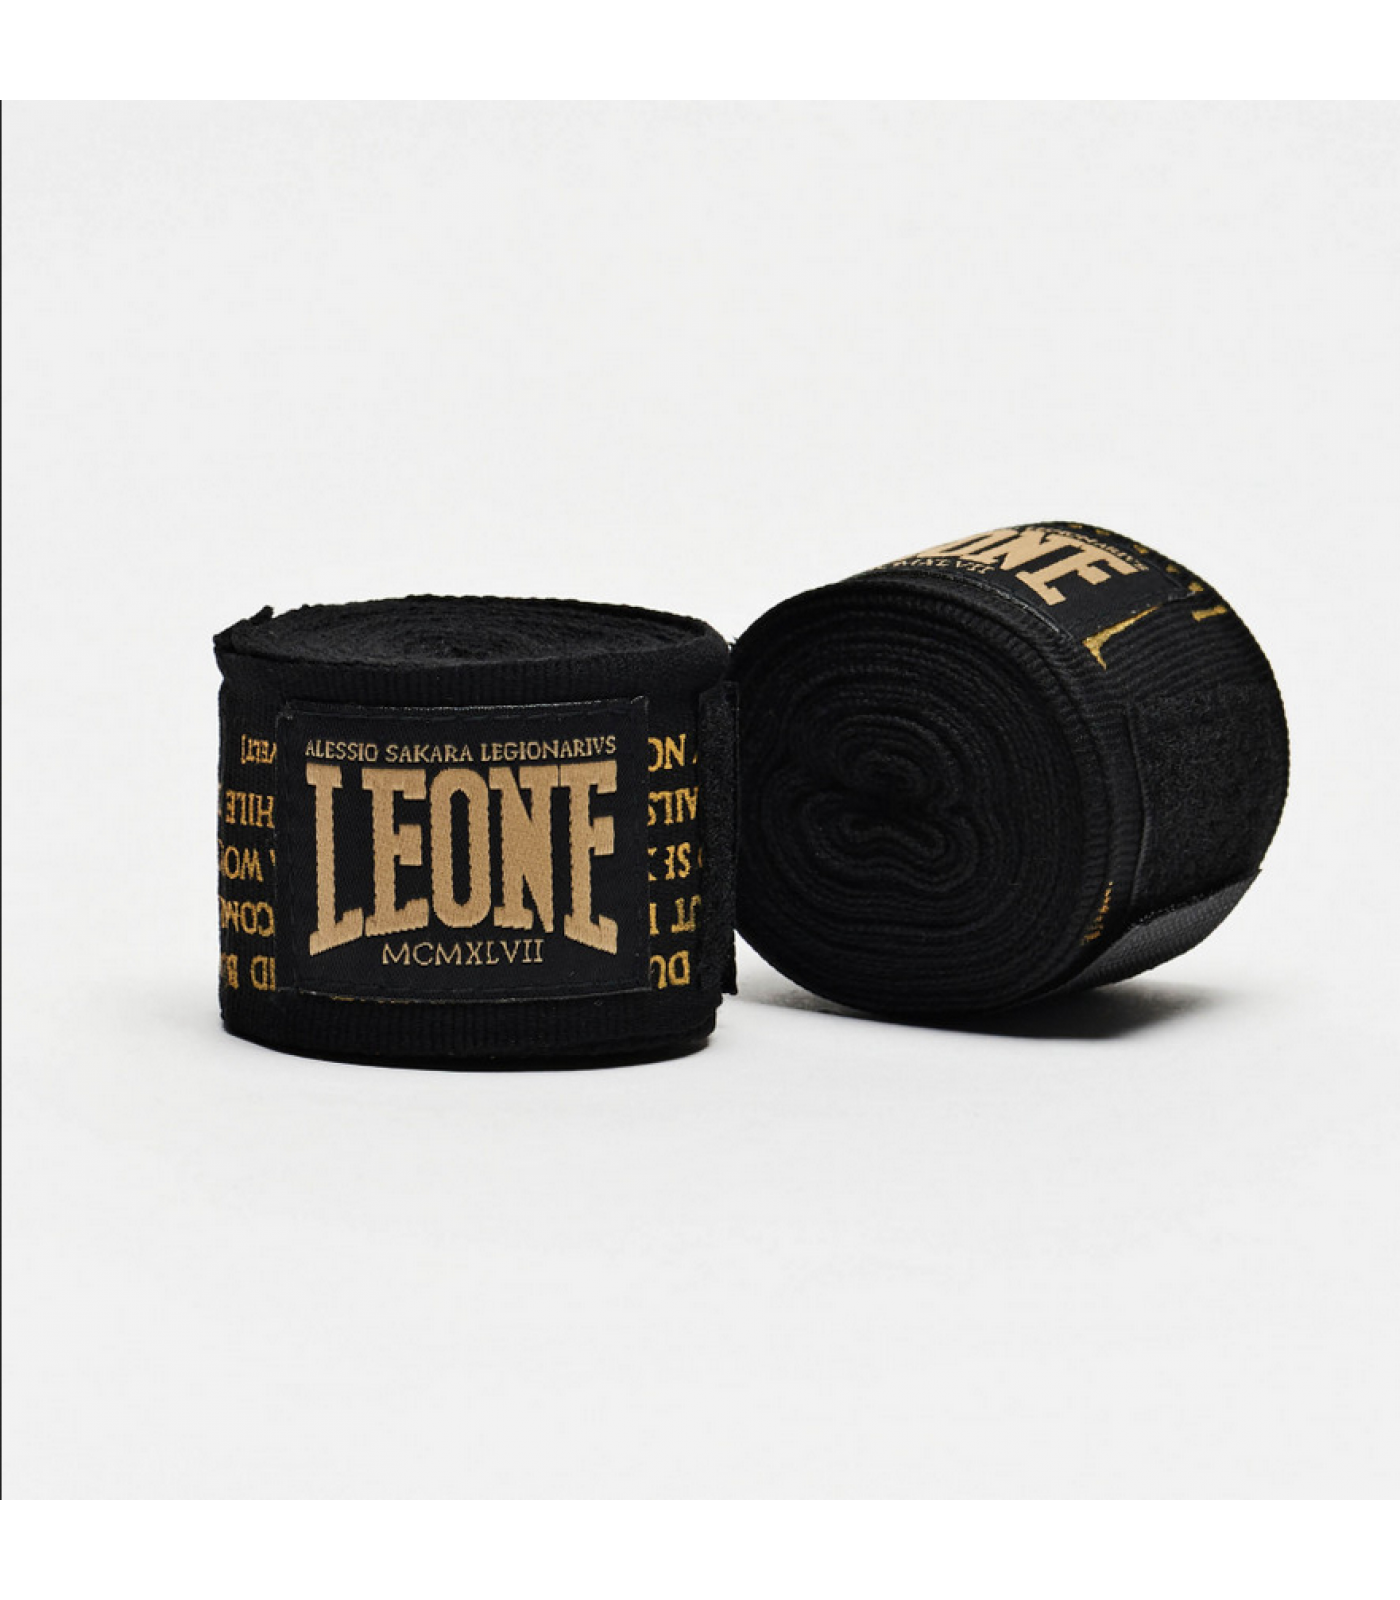 Leone - Hand Wraps 3.5 m / Legionarvis